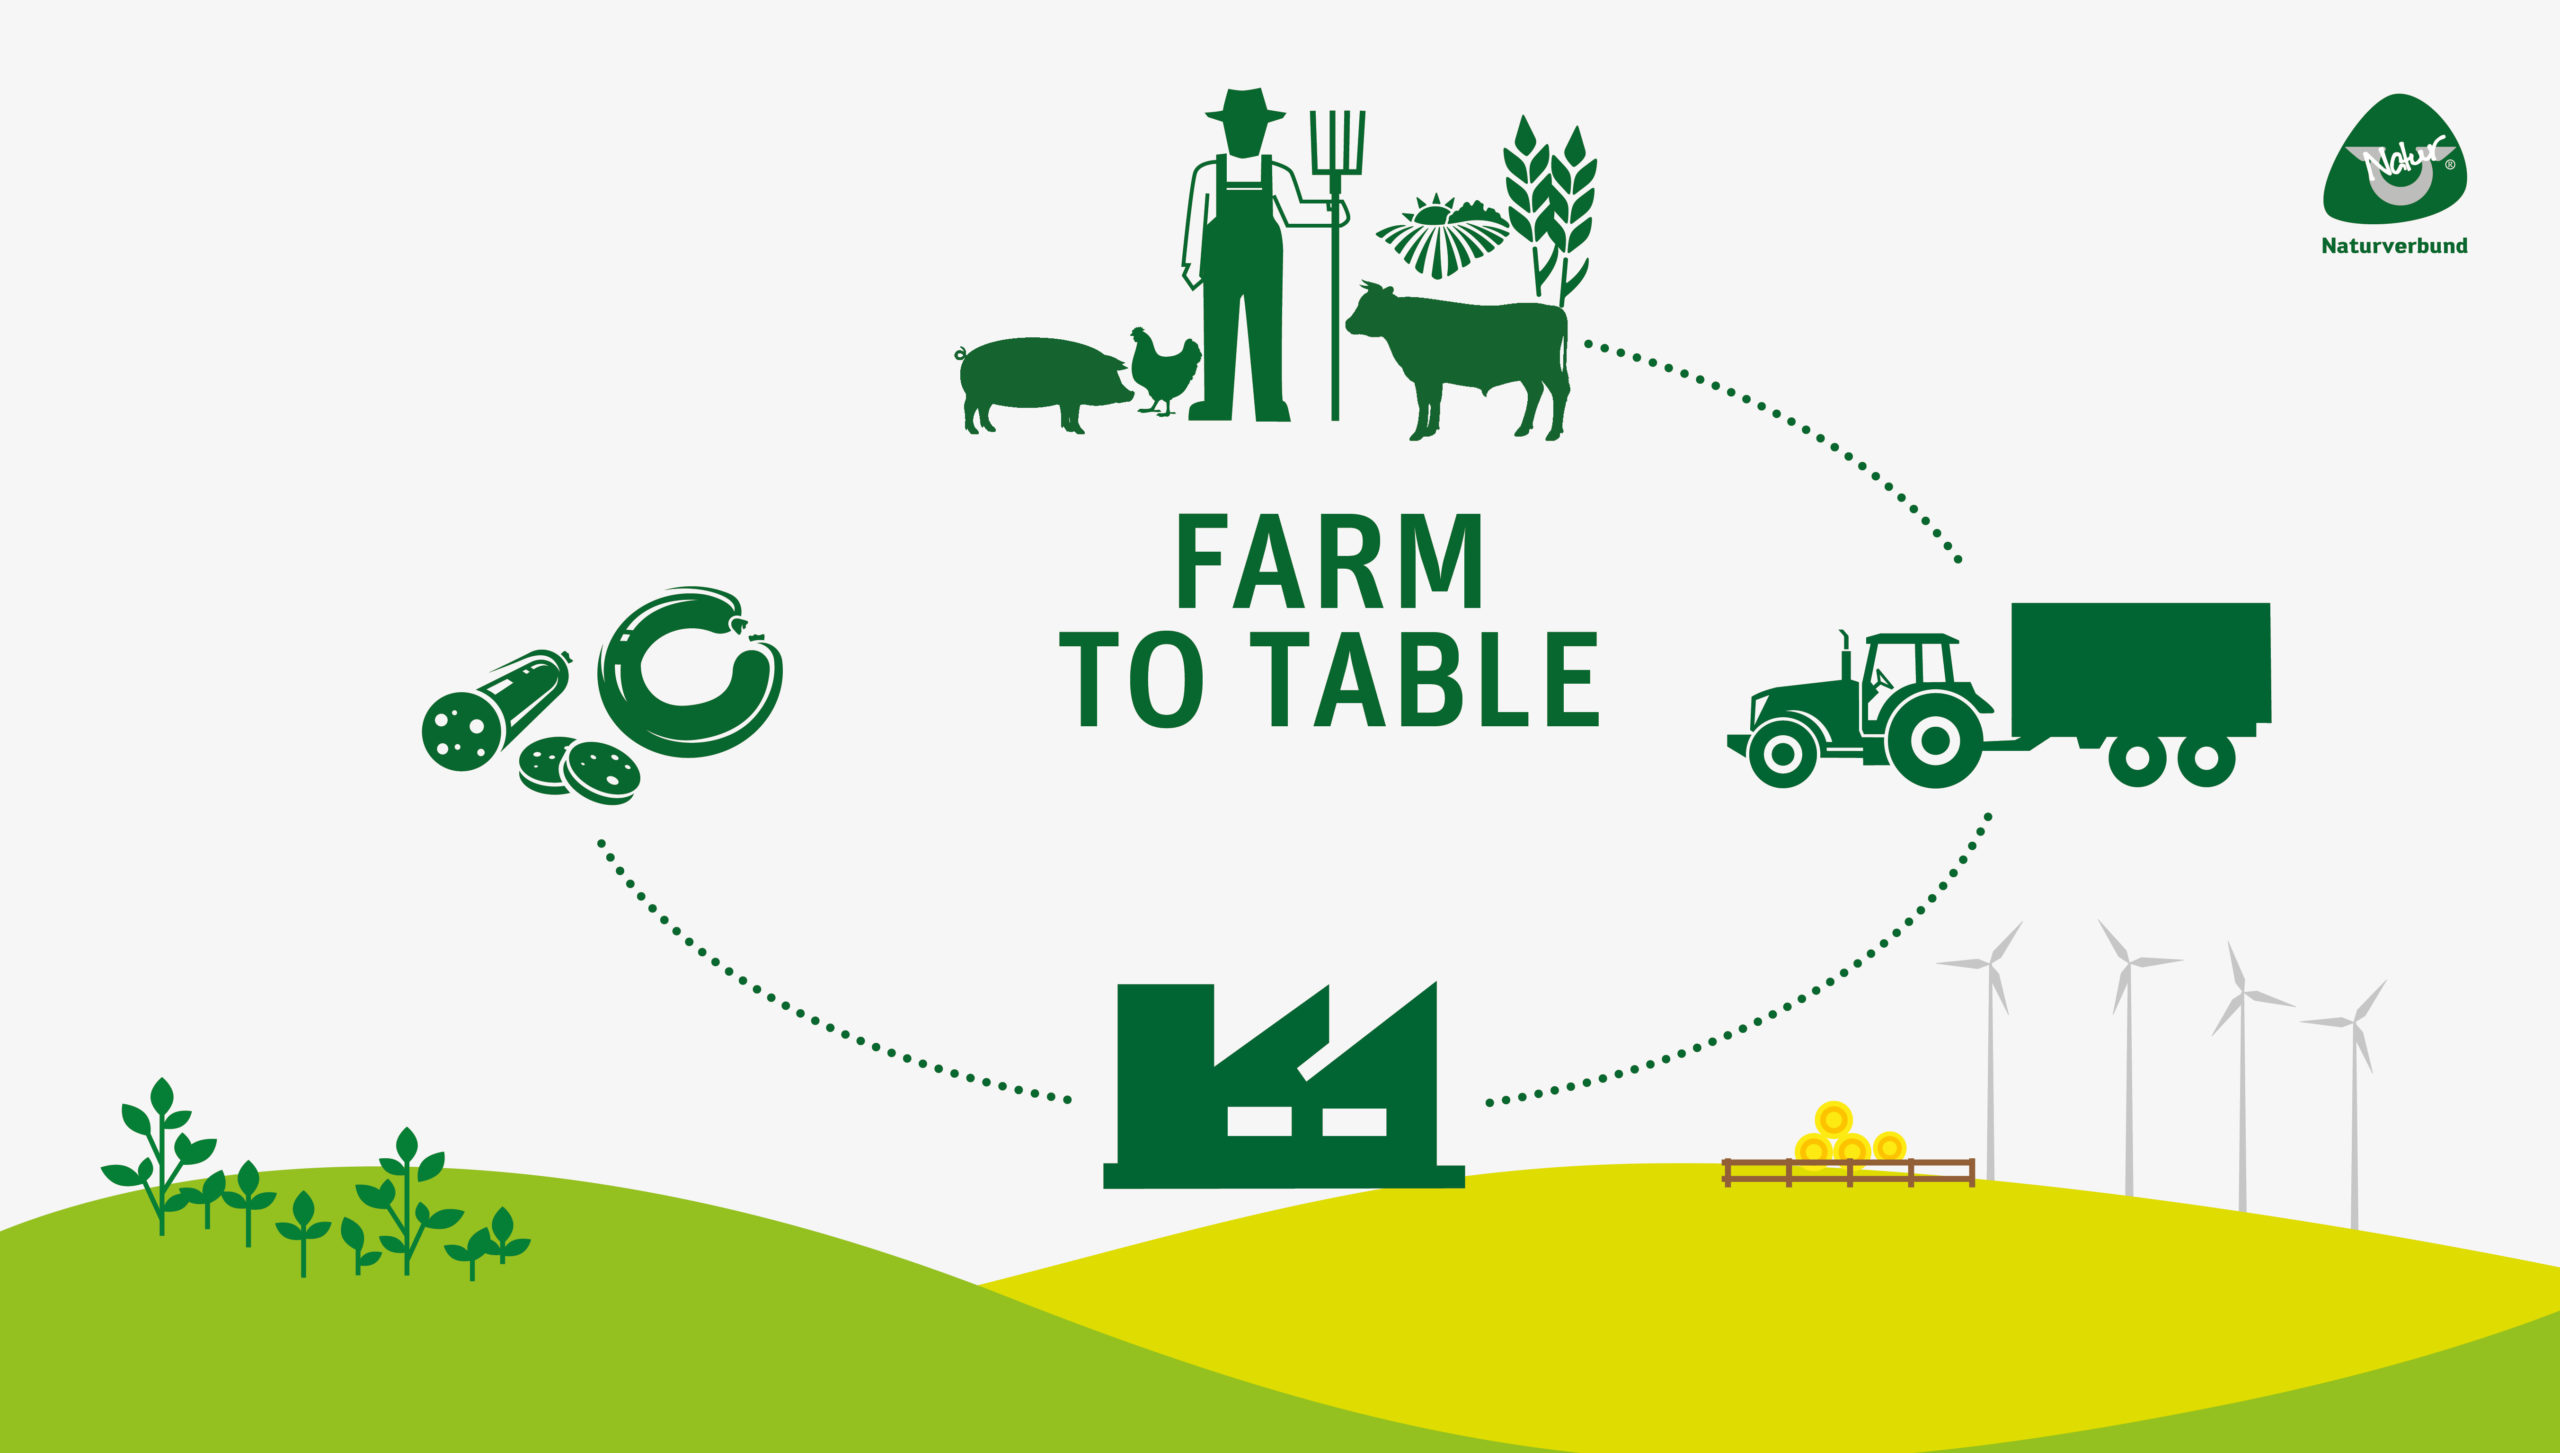 Farm to table – Naturverbund